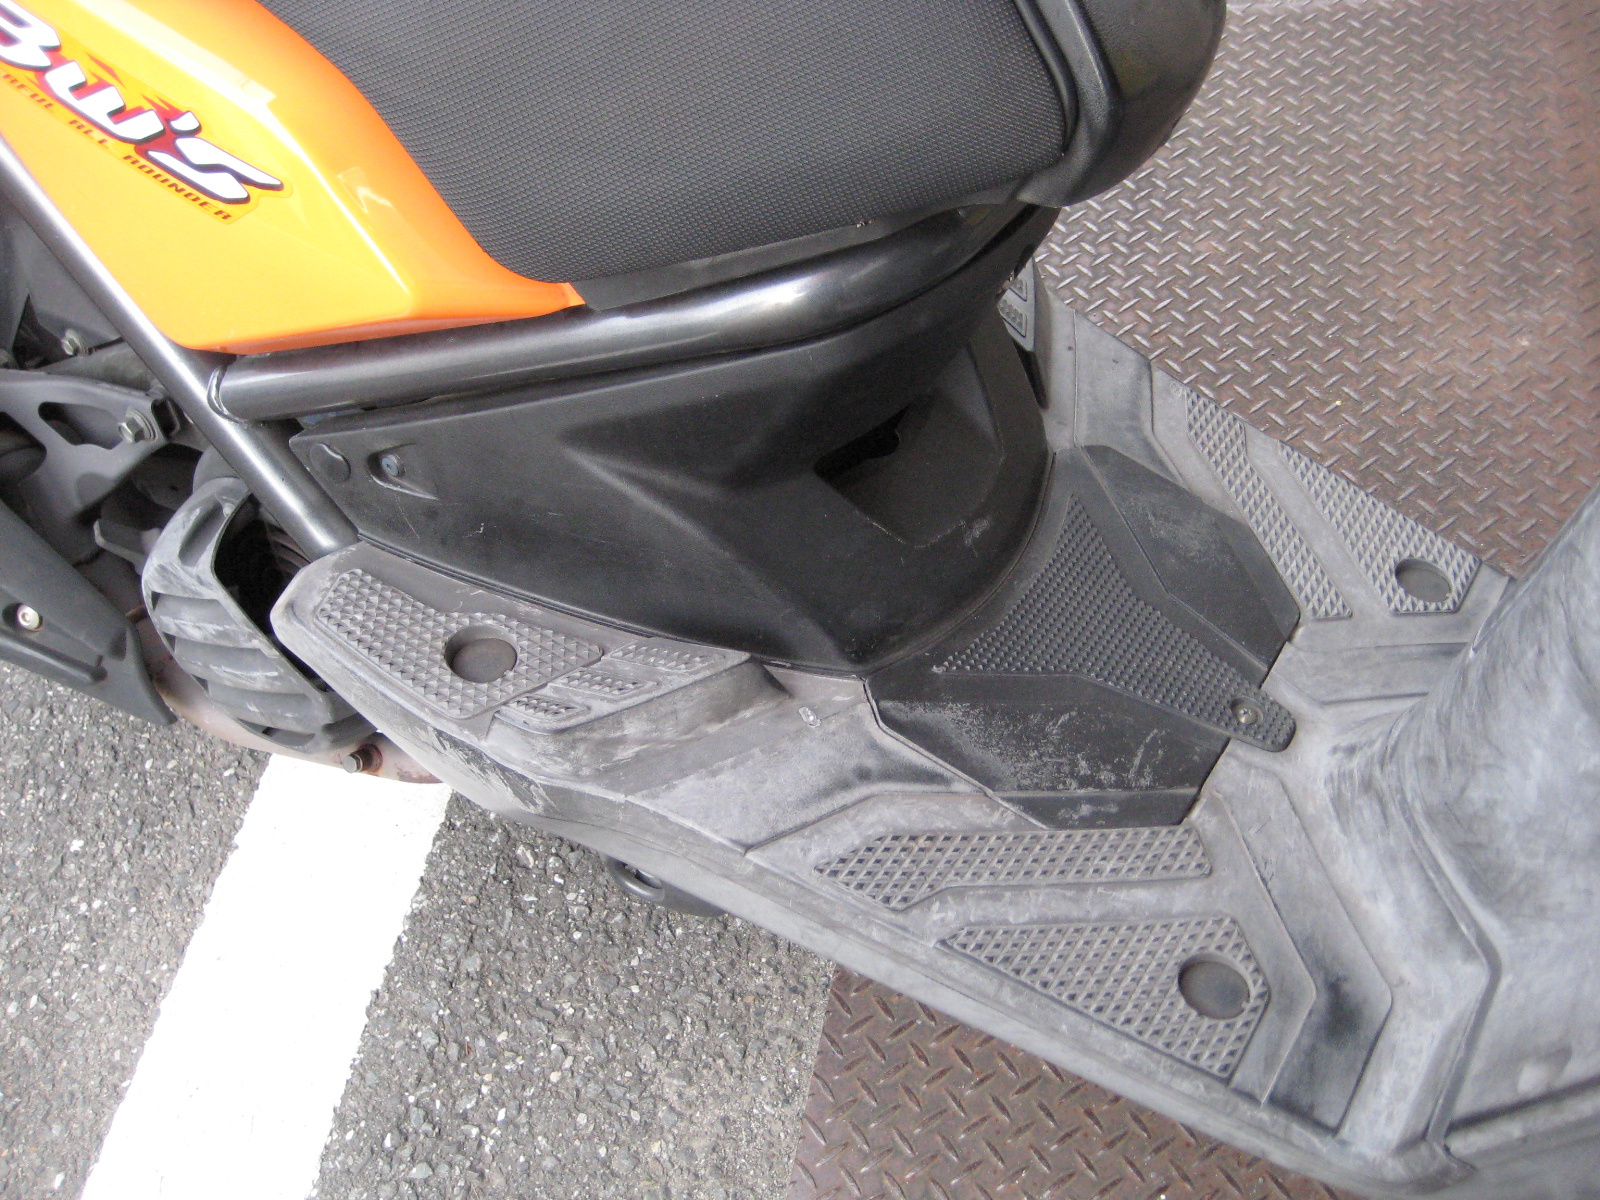 スクーター 白くなった樹脂カウルを復活する方法 Custom Repair Modified Scooter Moped Motorcycle By Yourself